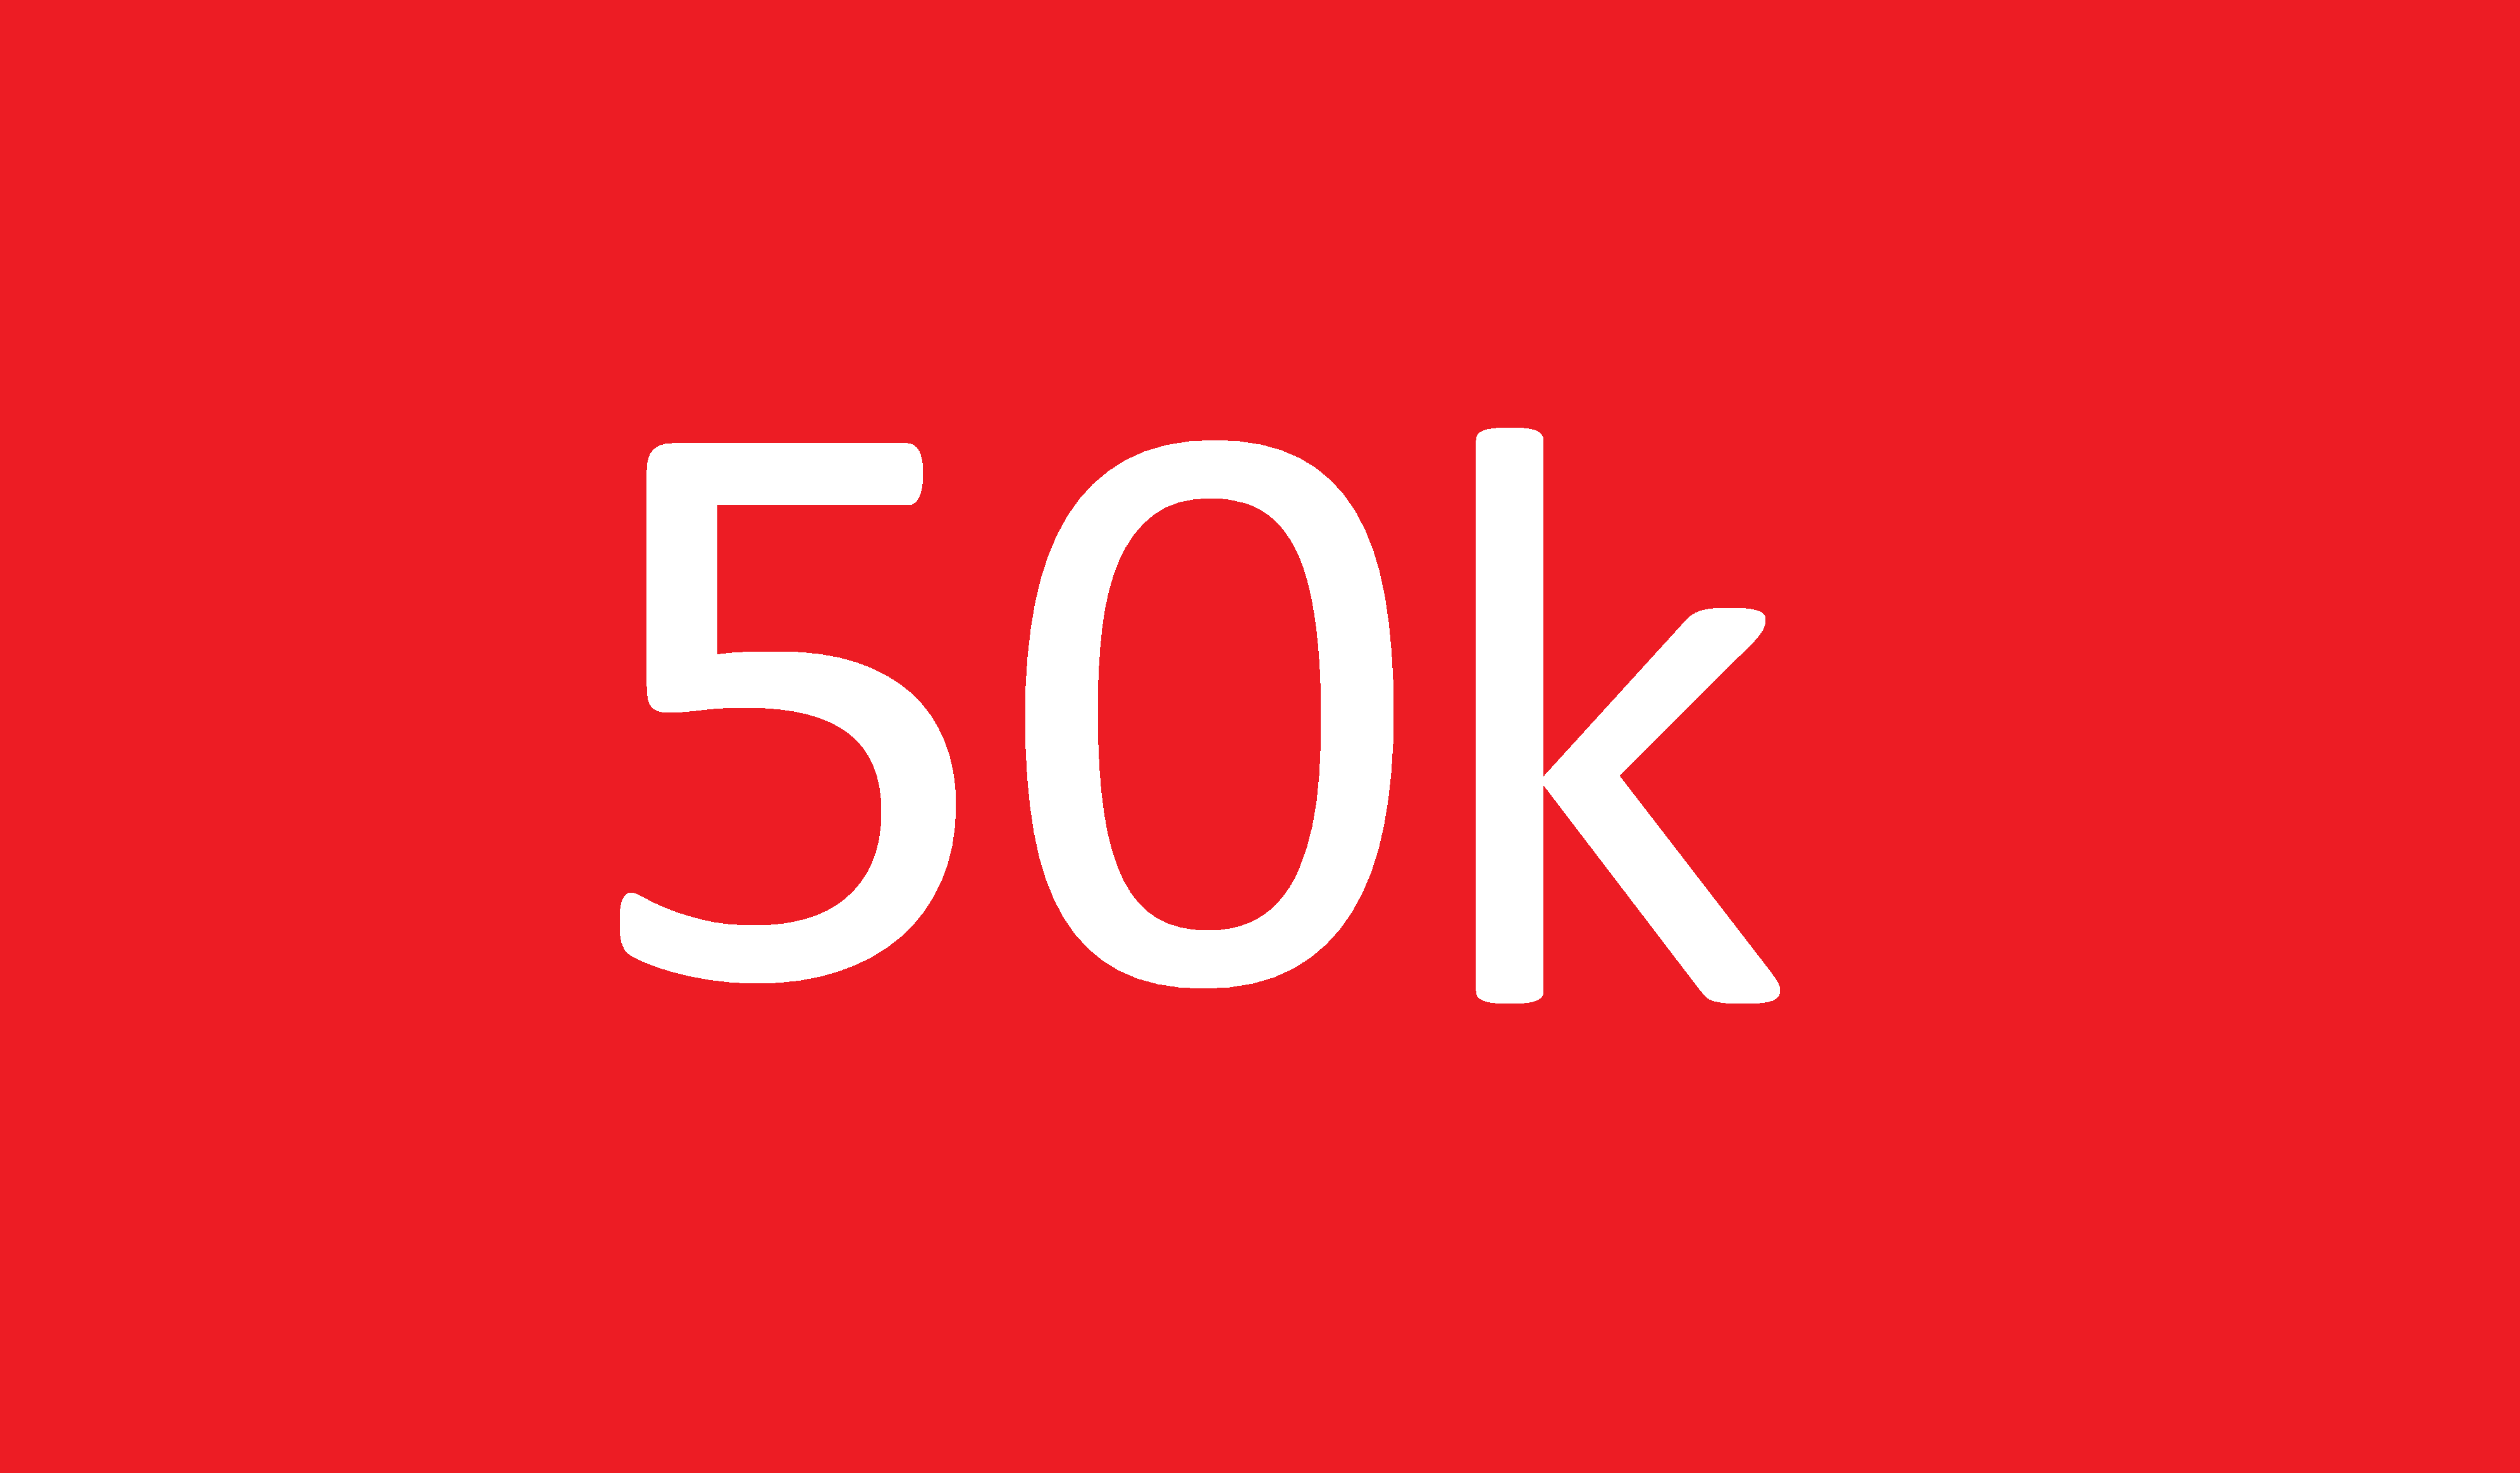 Считать подписчиков. 30 Тысяч подписчиков. Нас 30 000 подписчиков. 30000 Картинка. 30000 Цифра.